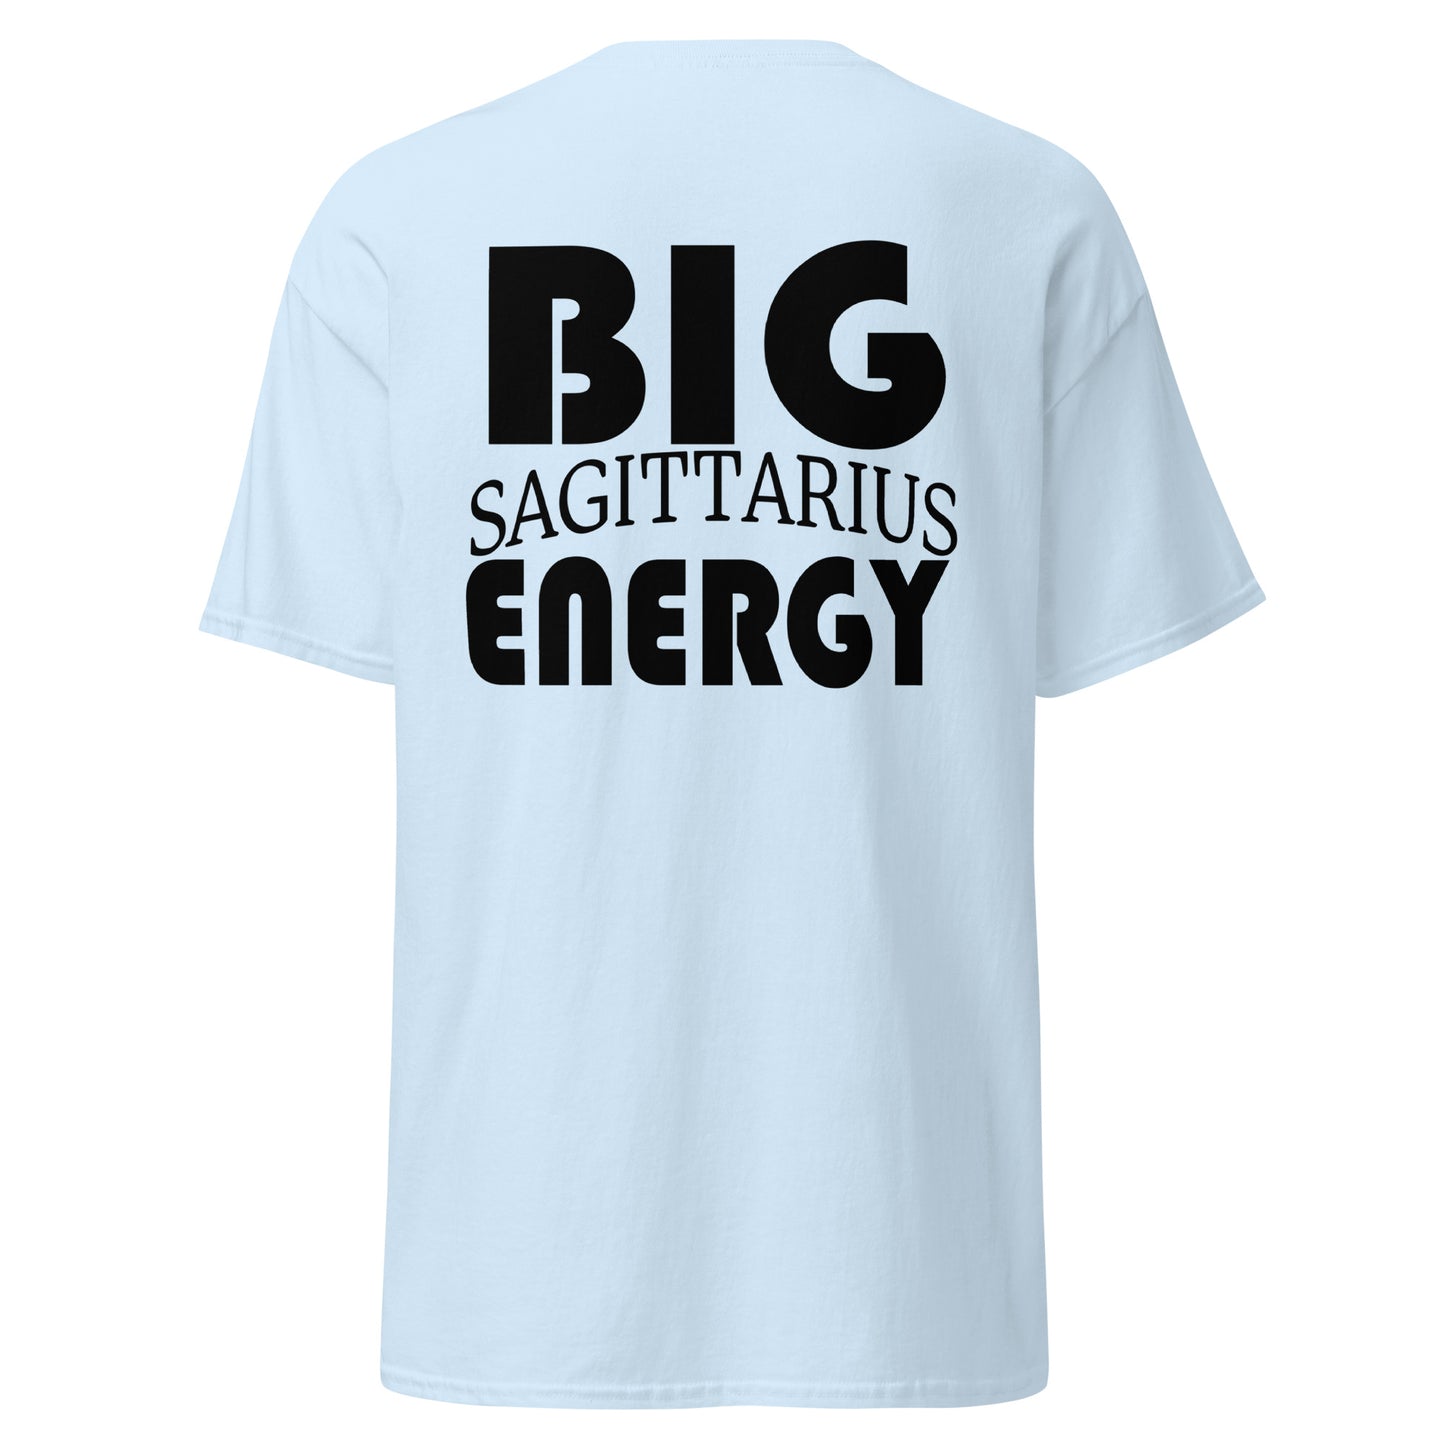 Big Sagittarius Energy Tee